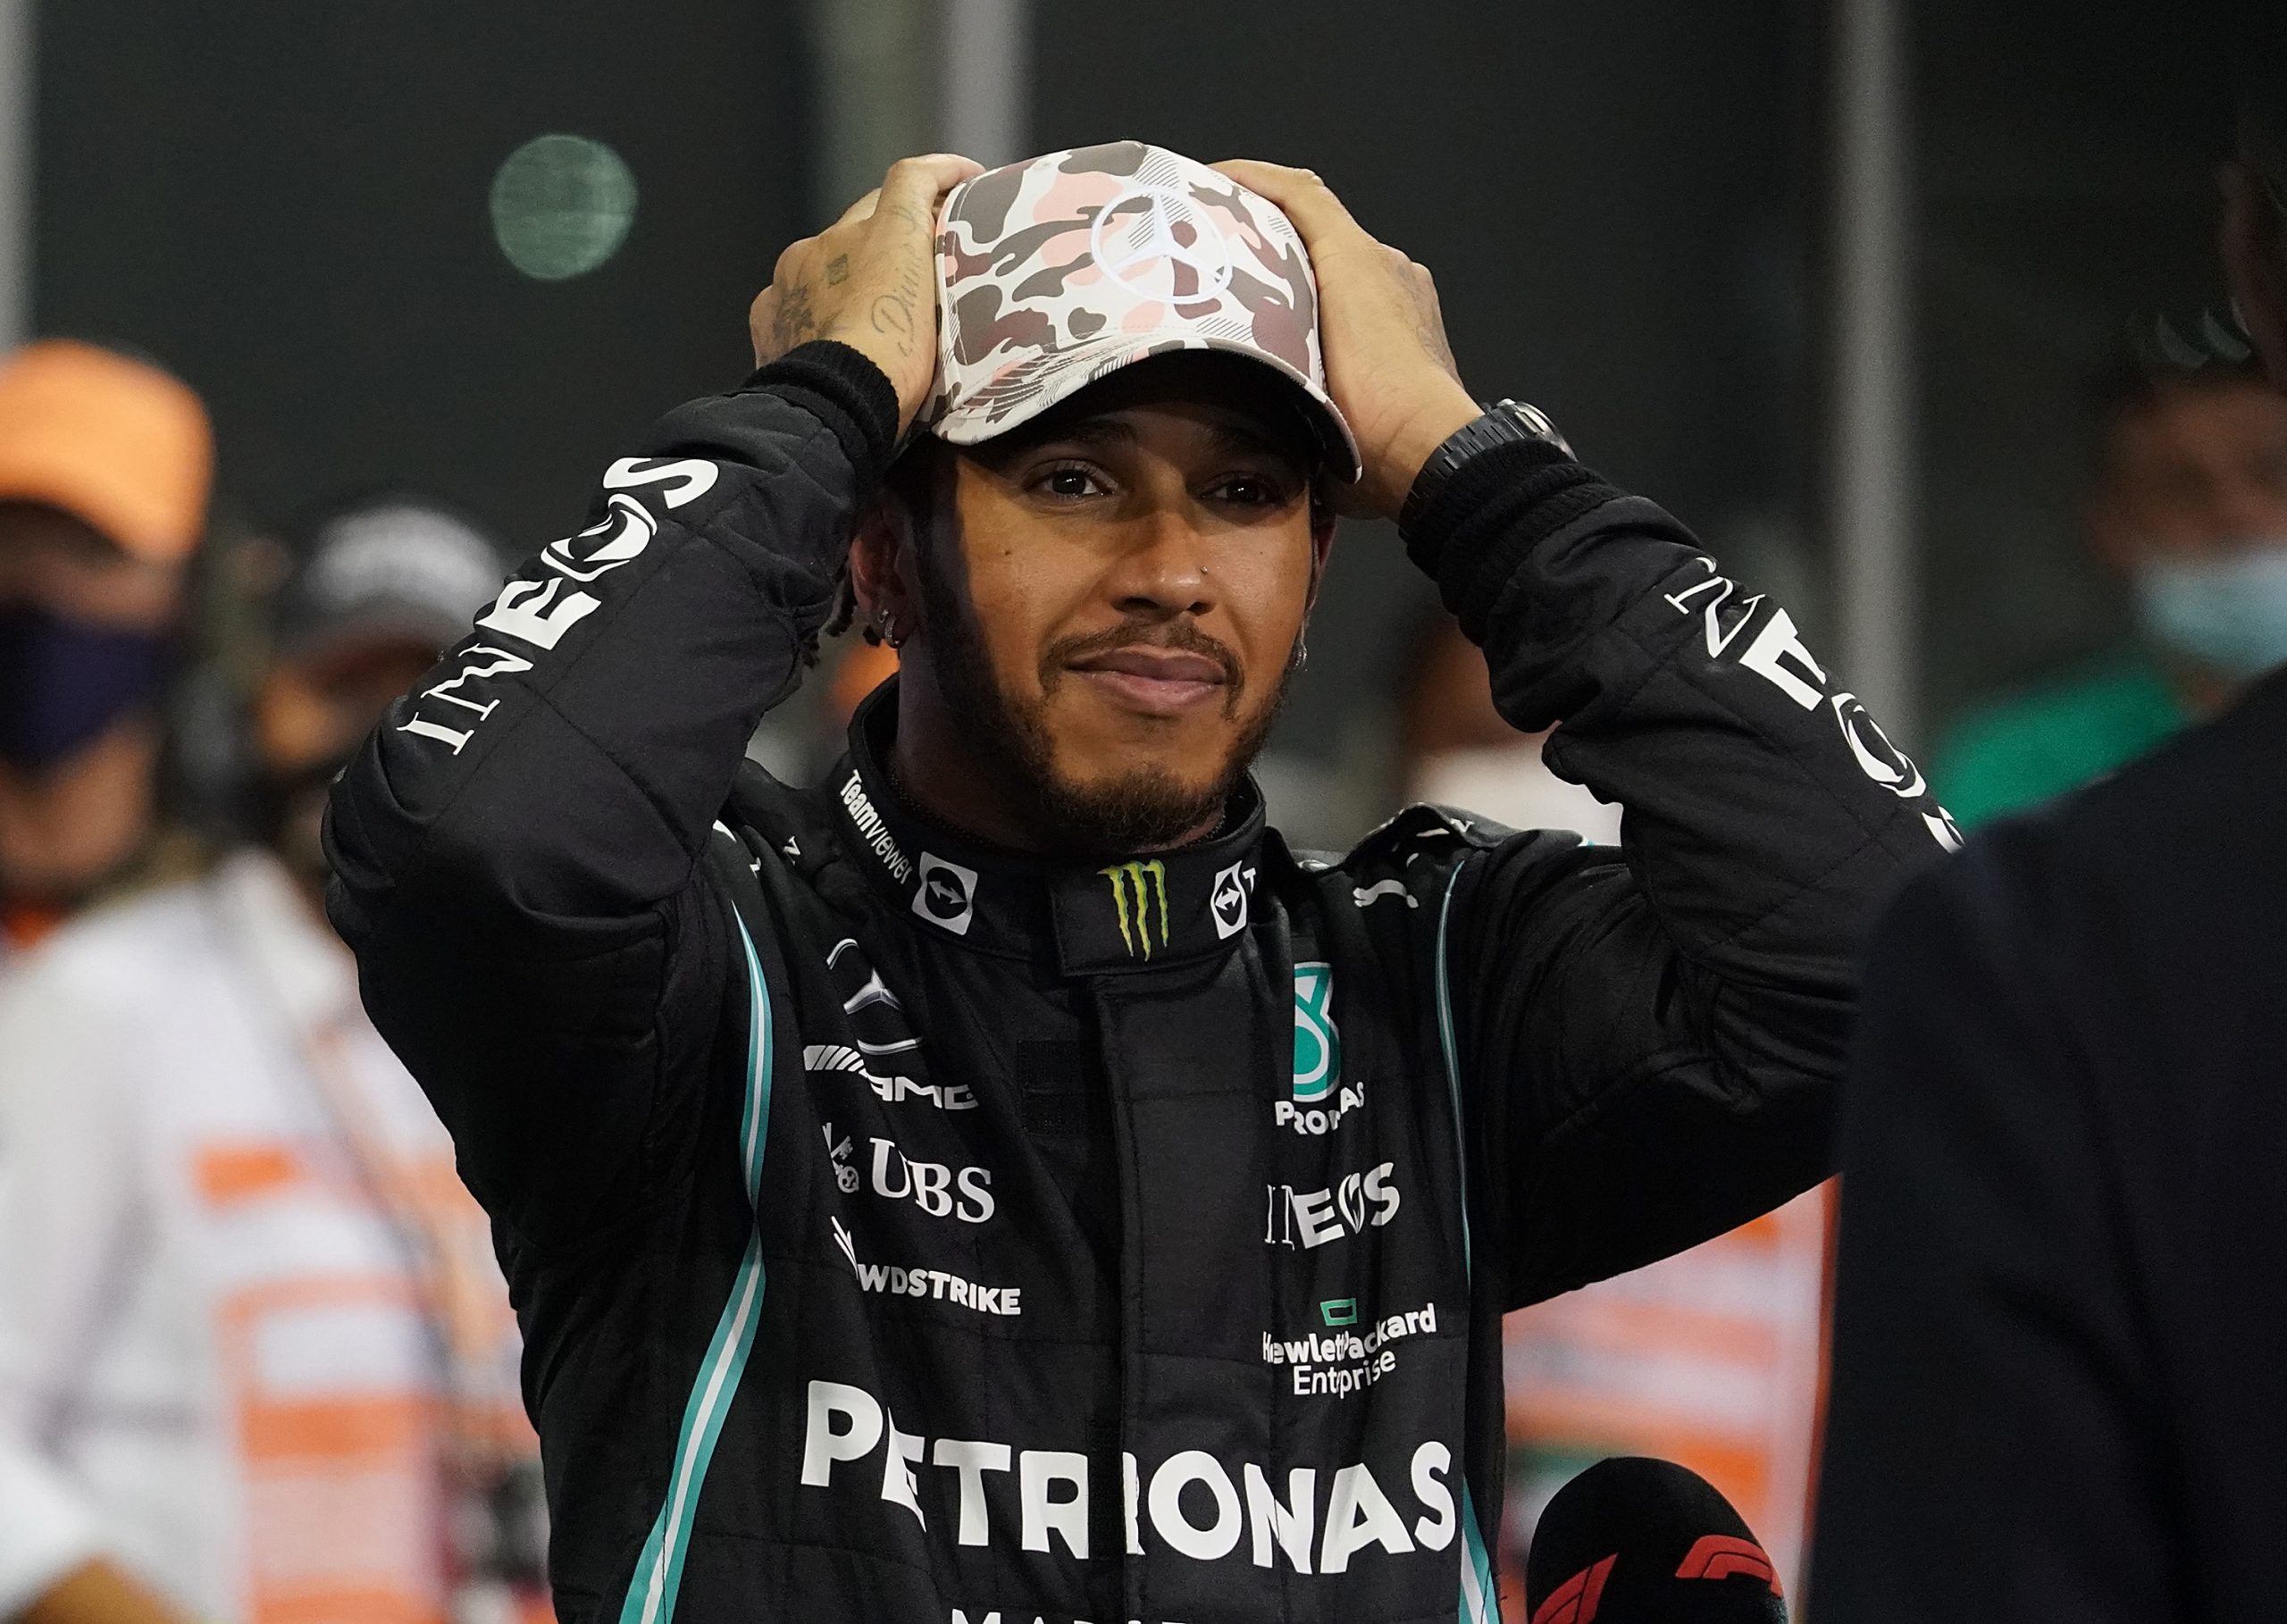 Ob Lewis Hamilton weiter in der Formel 1 fährt, hängt offenbar davon ab, wie die FIA mit dem umstrittenen Rennleiter Michael Masi umgeht. (Archivbild)